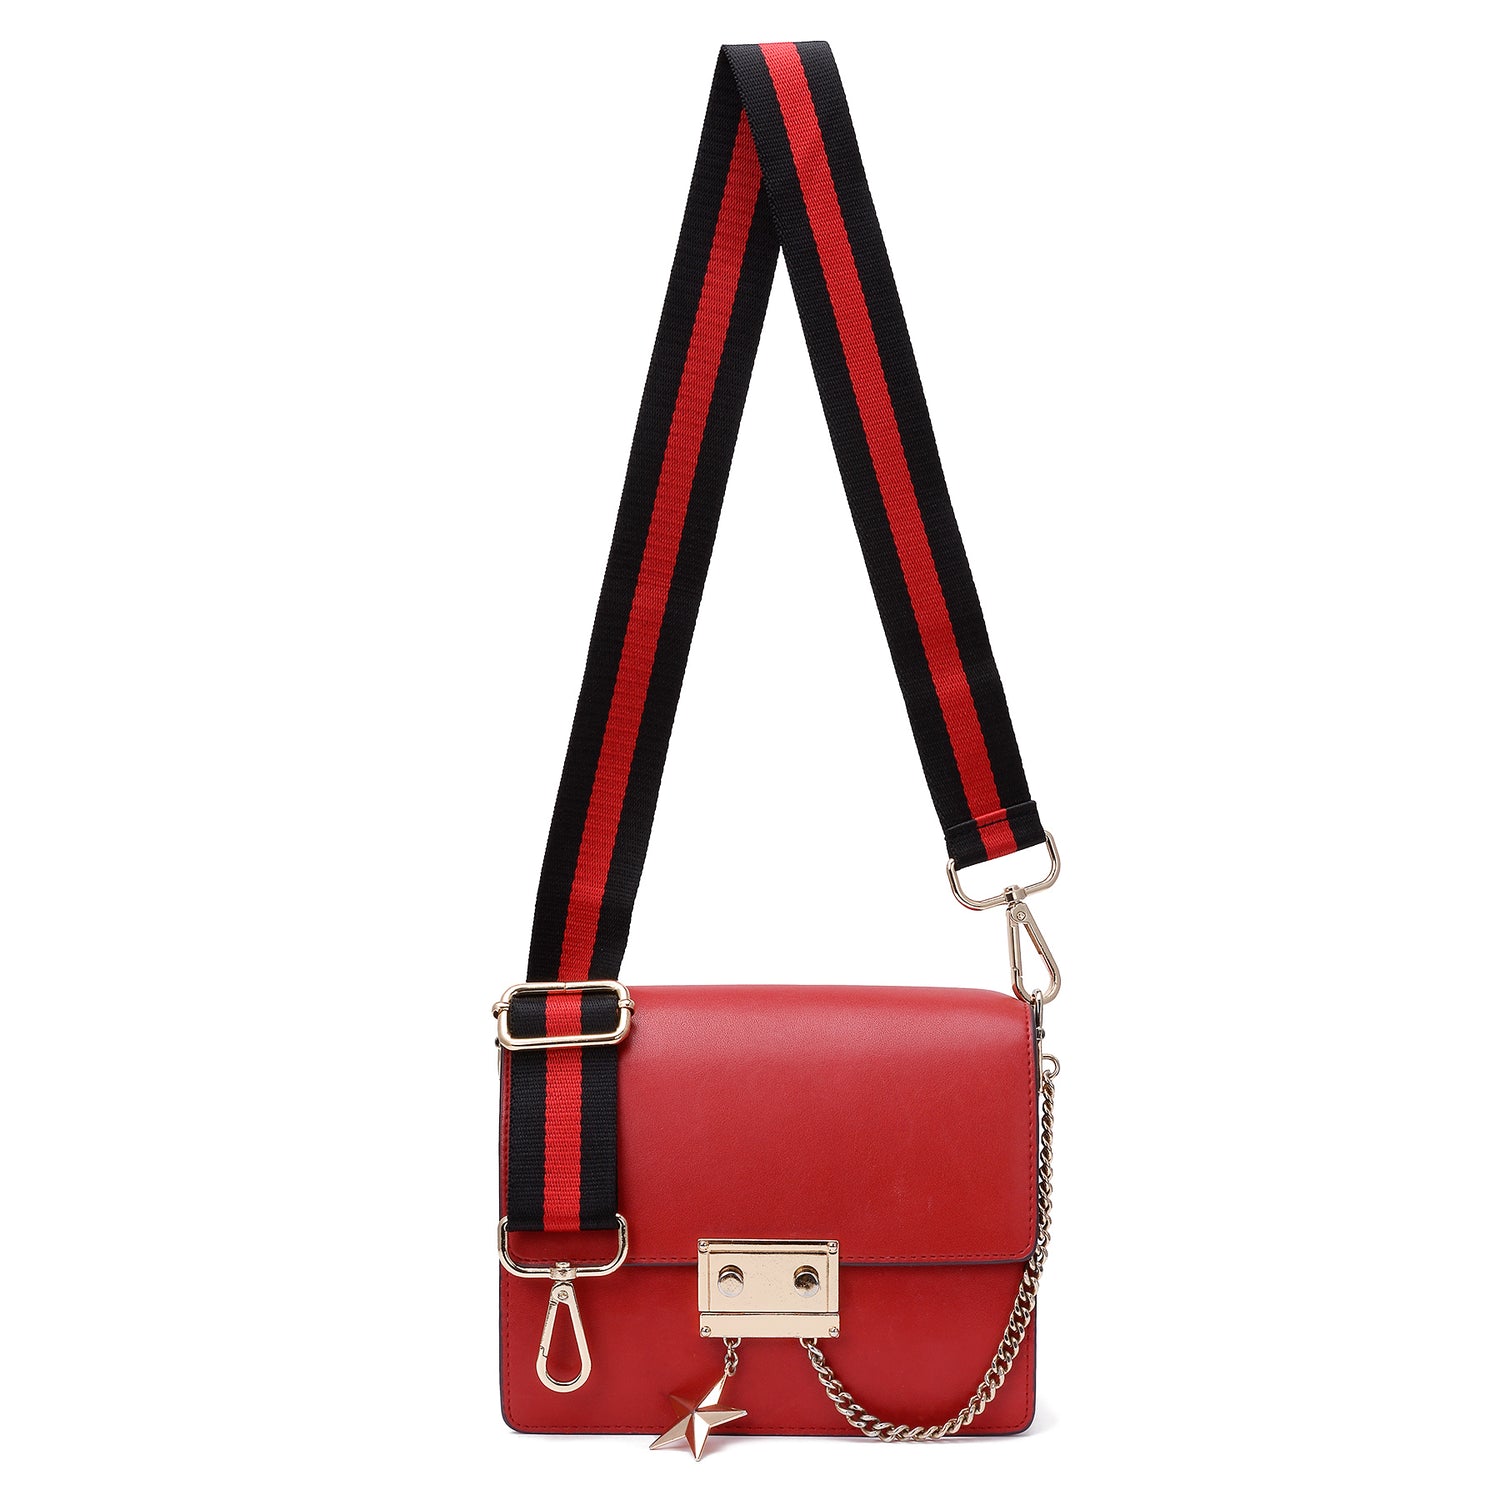 Bag Straps 130cm Bag Strap Wide Shoulder Strap for Handbag Replacement,  Adjustable Strap for Handbag Straps Accessories (Color : NO.344 Gold)